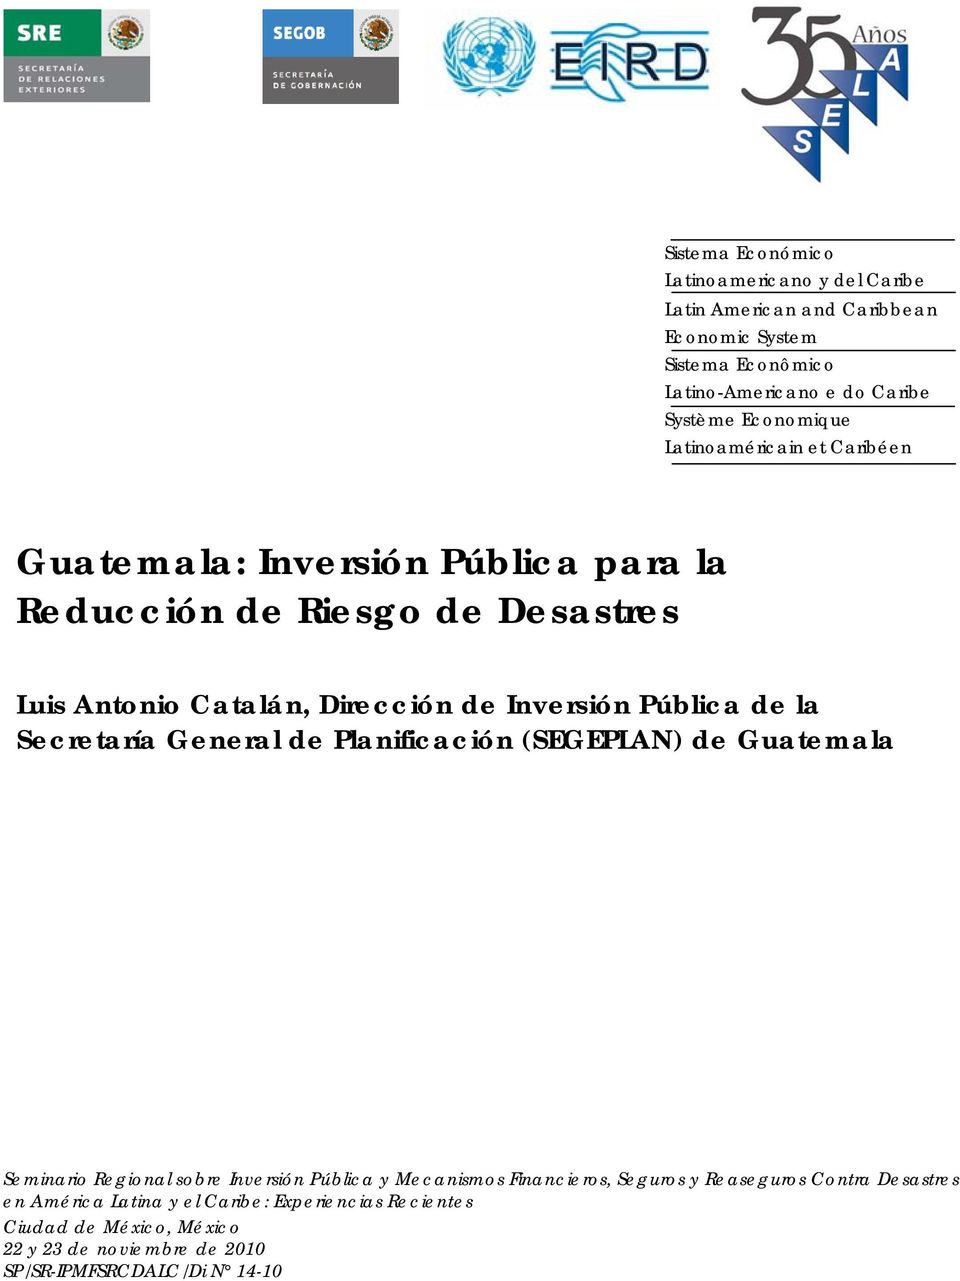 Pública de la Secretaría General de Planificación (SEGEPLAN) de Guatemala Seminario Regional sobre Inversión Pública y Mecanismos Financieros, Seguros y